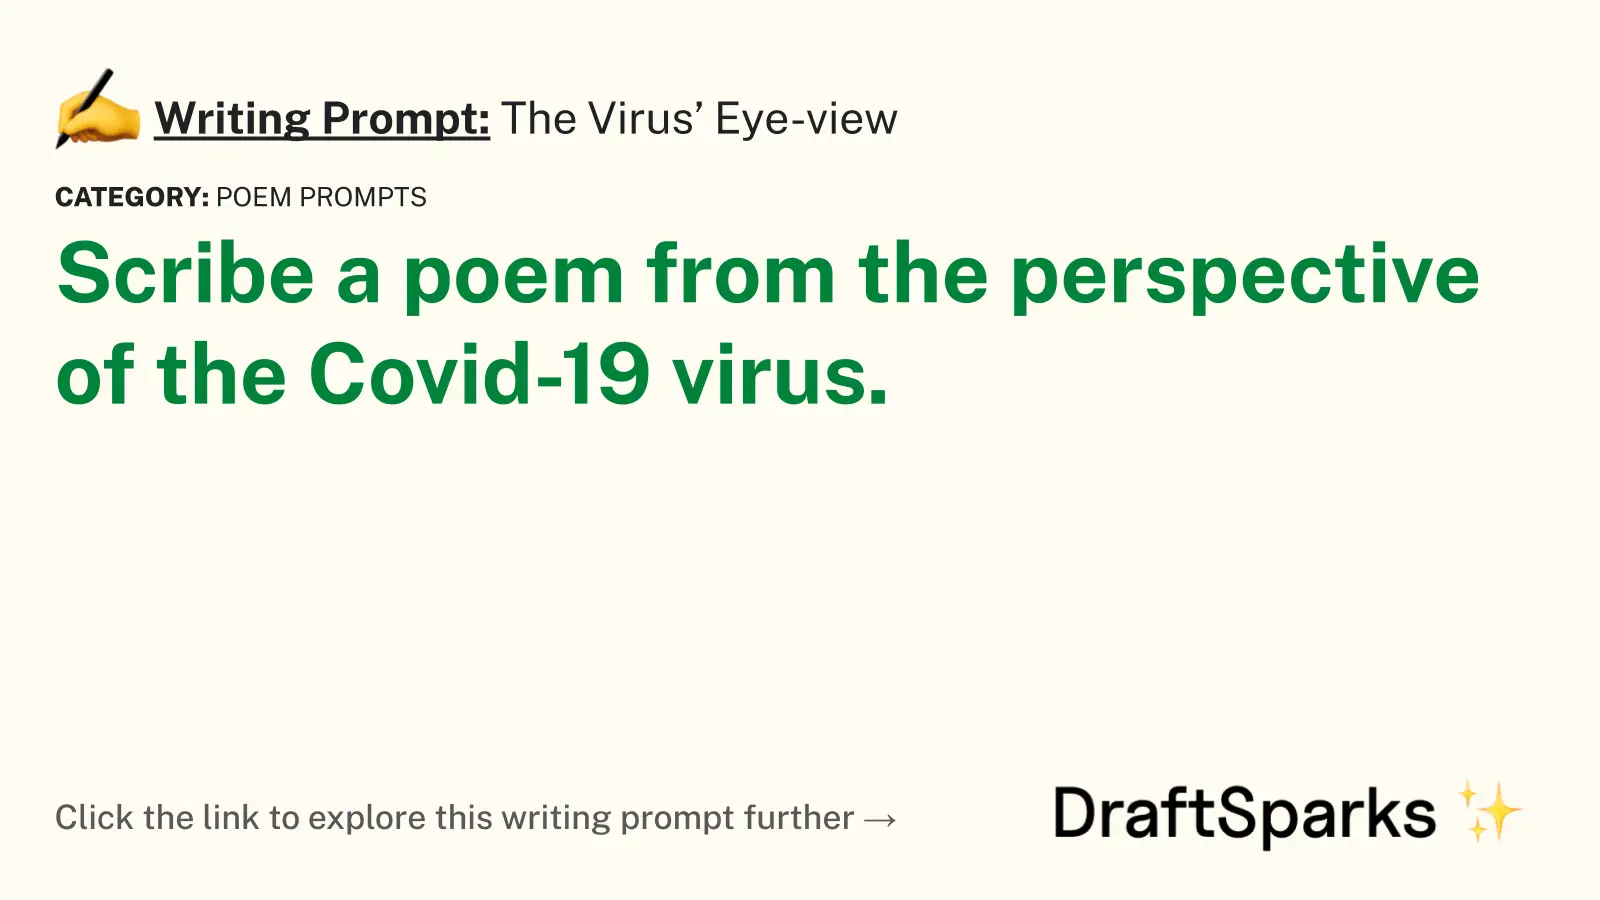 The Virus’ Eye-view